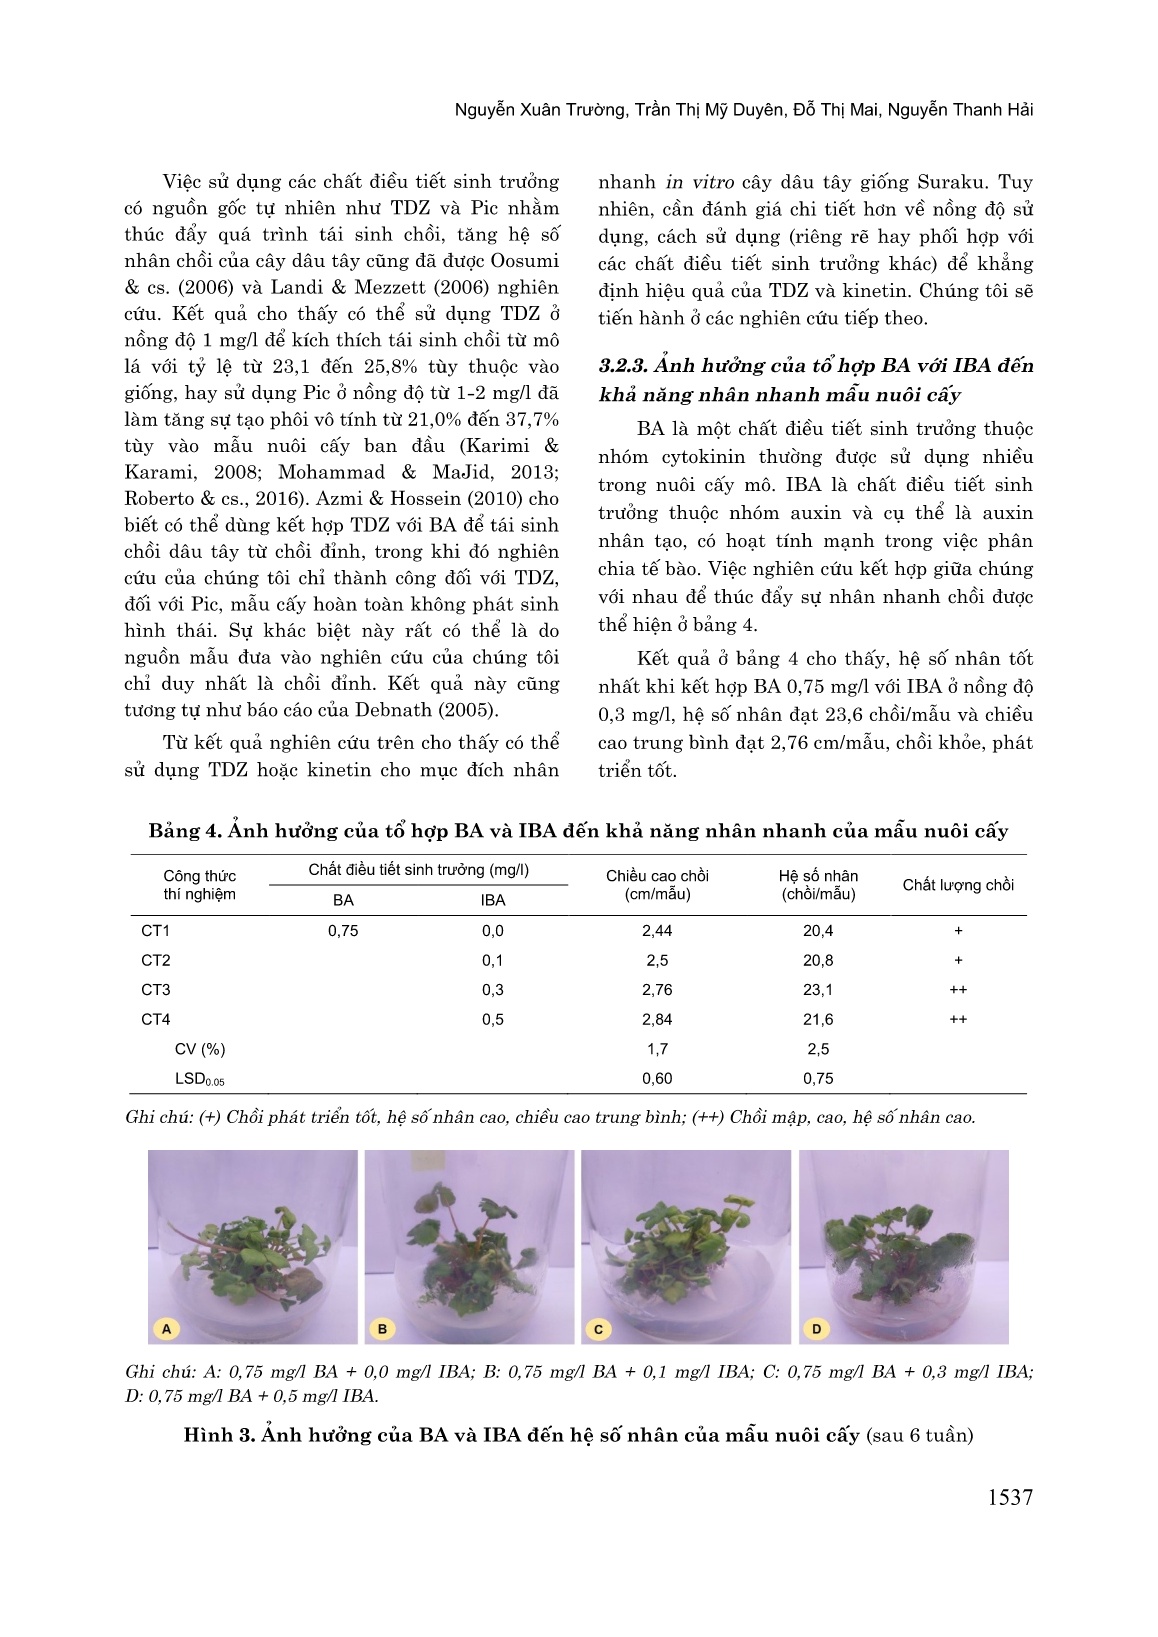 Nhân nhanh in vitro dâu tây (Fragaria x Ananassa Duch) giống “Sunraku” nhập nội từ Nhật Bản trang 7